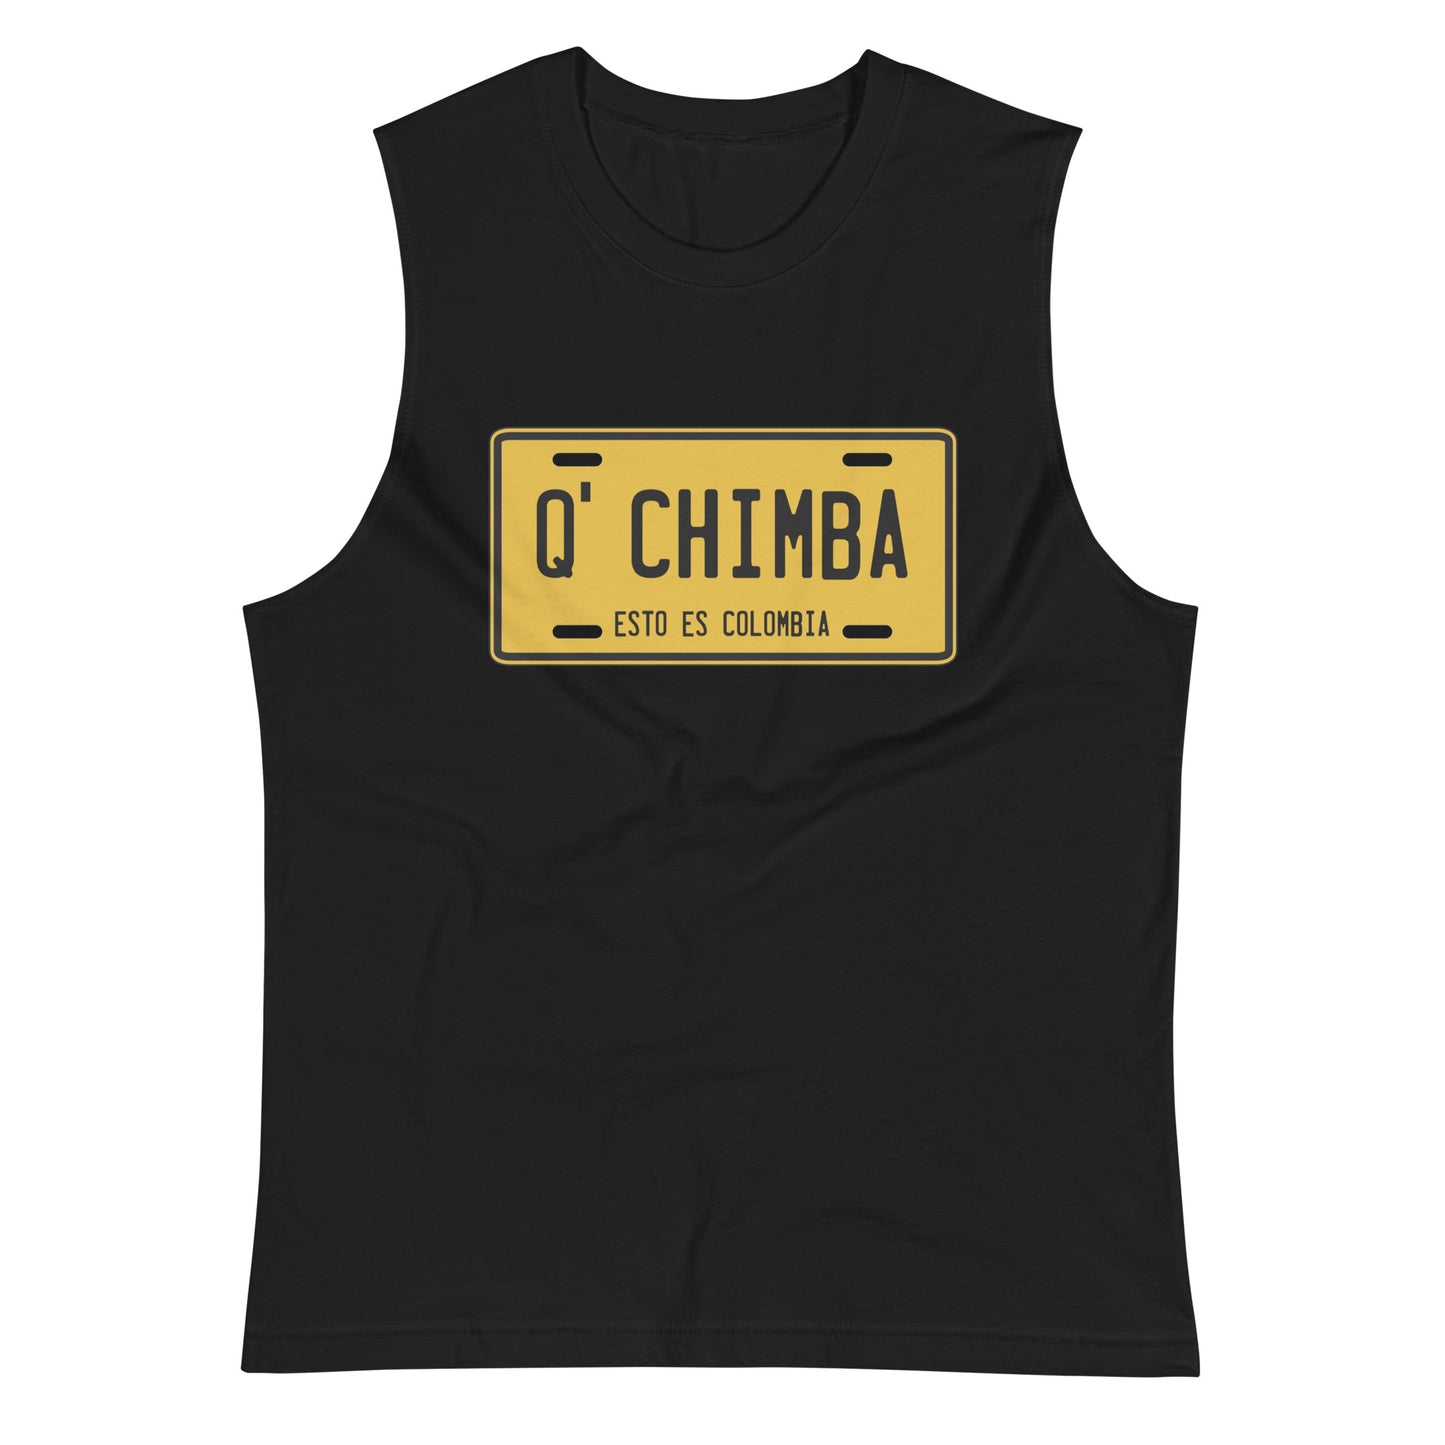 Camiseta sin mangas Q' Chimba: el emblema de orgullo colombiano con calidad excepcional y estampado que resiste el paso del tiempo.